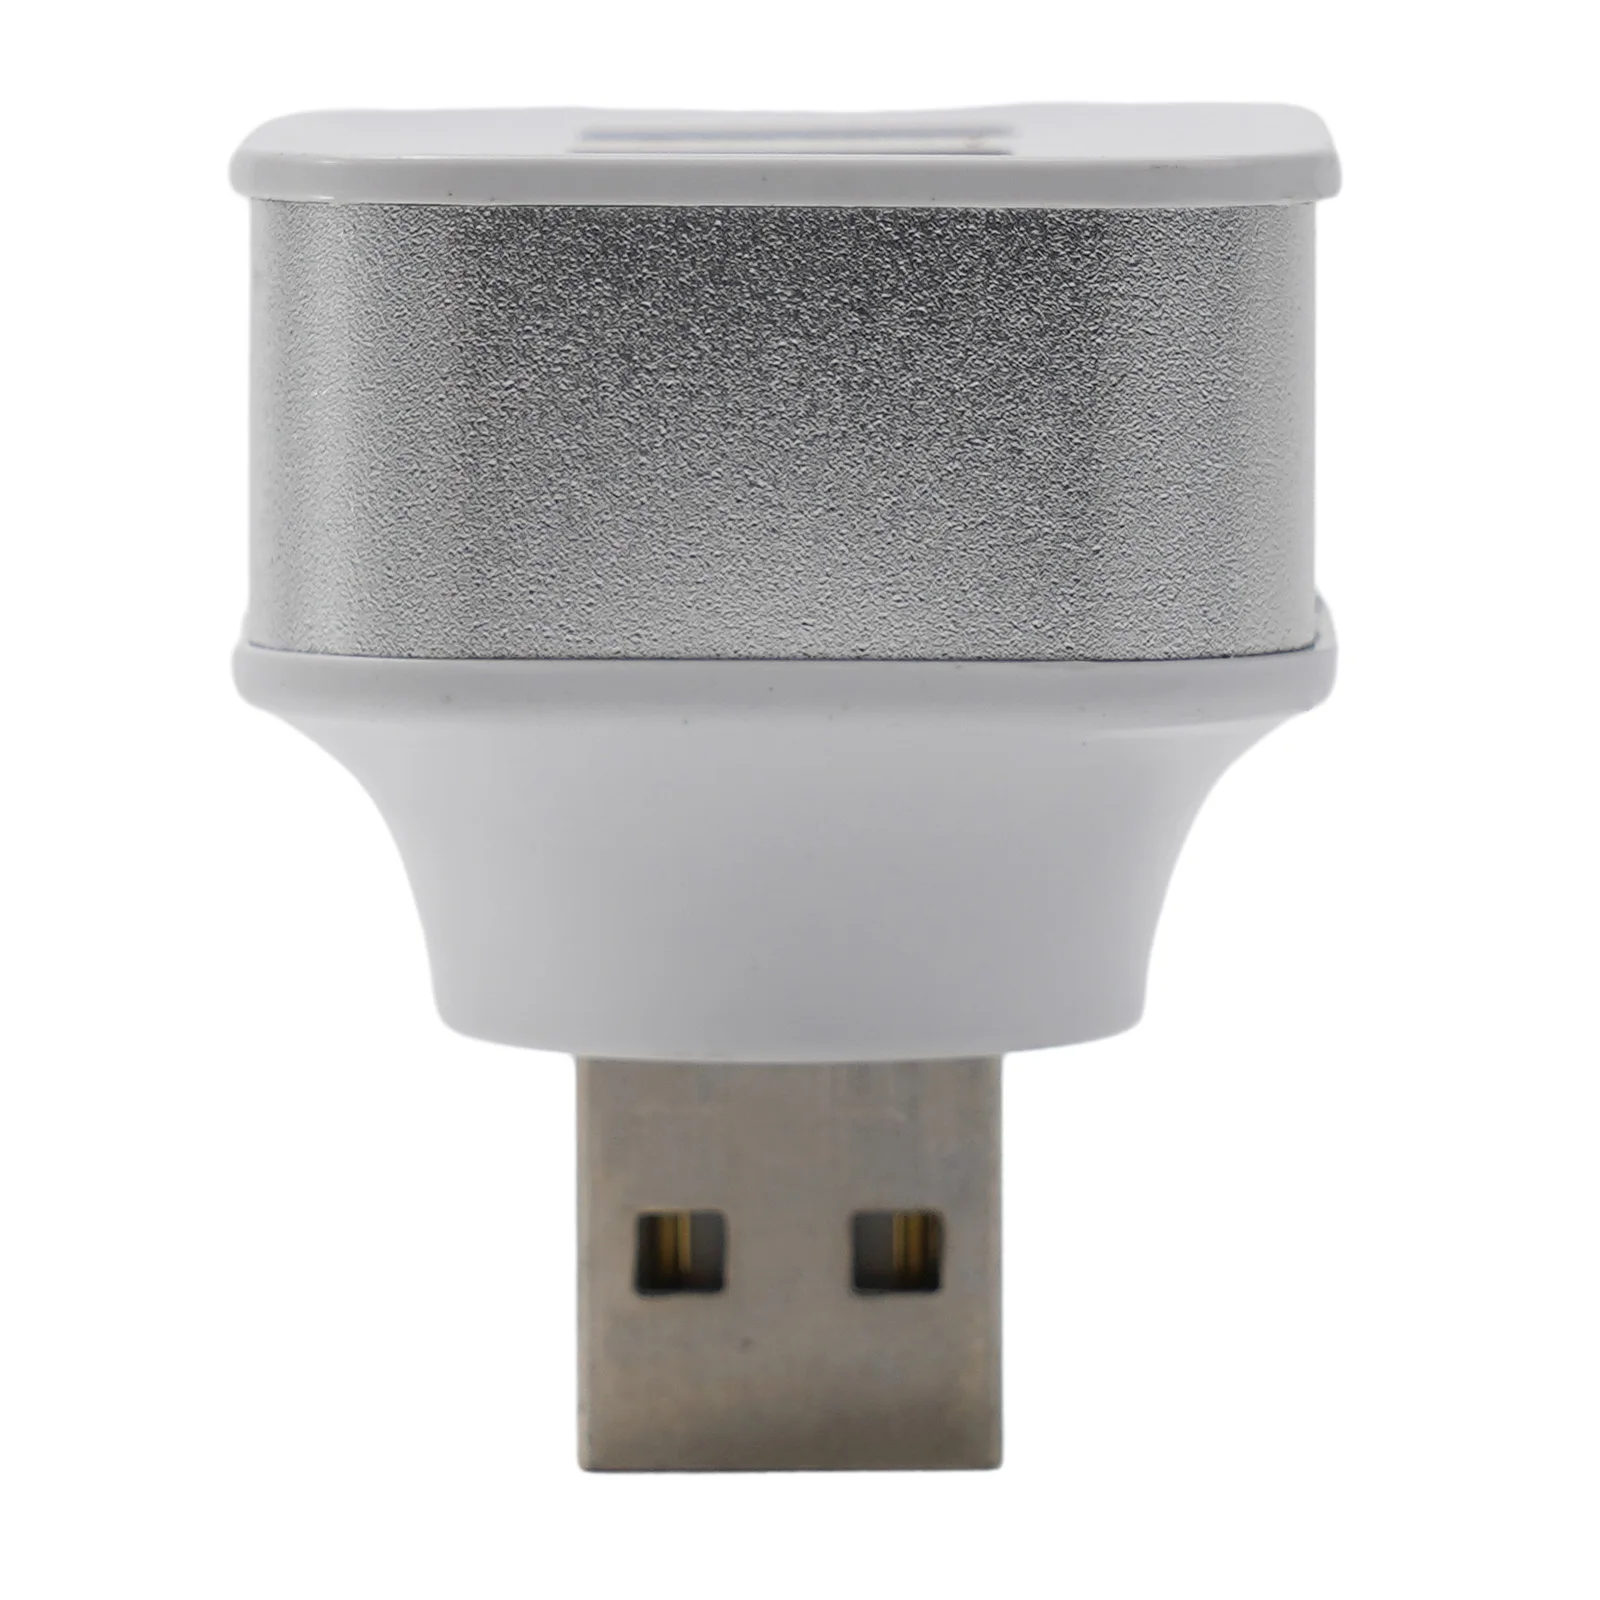 

Удлинитель USB может заряжать только золотой, серебристый, черный, а не передавать данные, вход USB-интерфейса, 1 шт., аксессуары